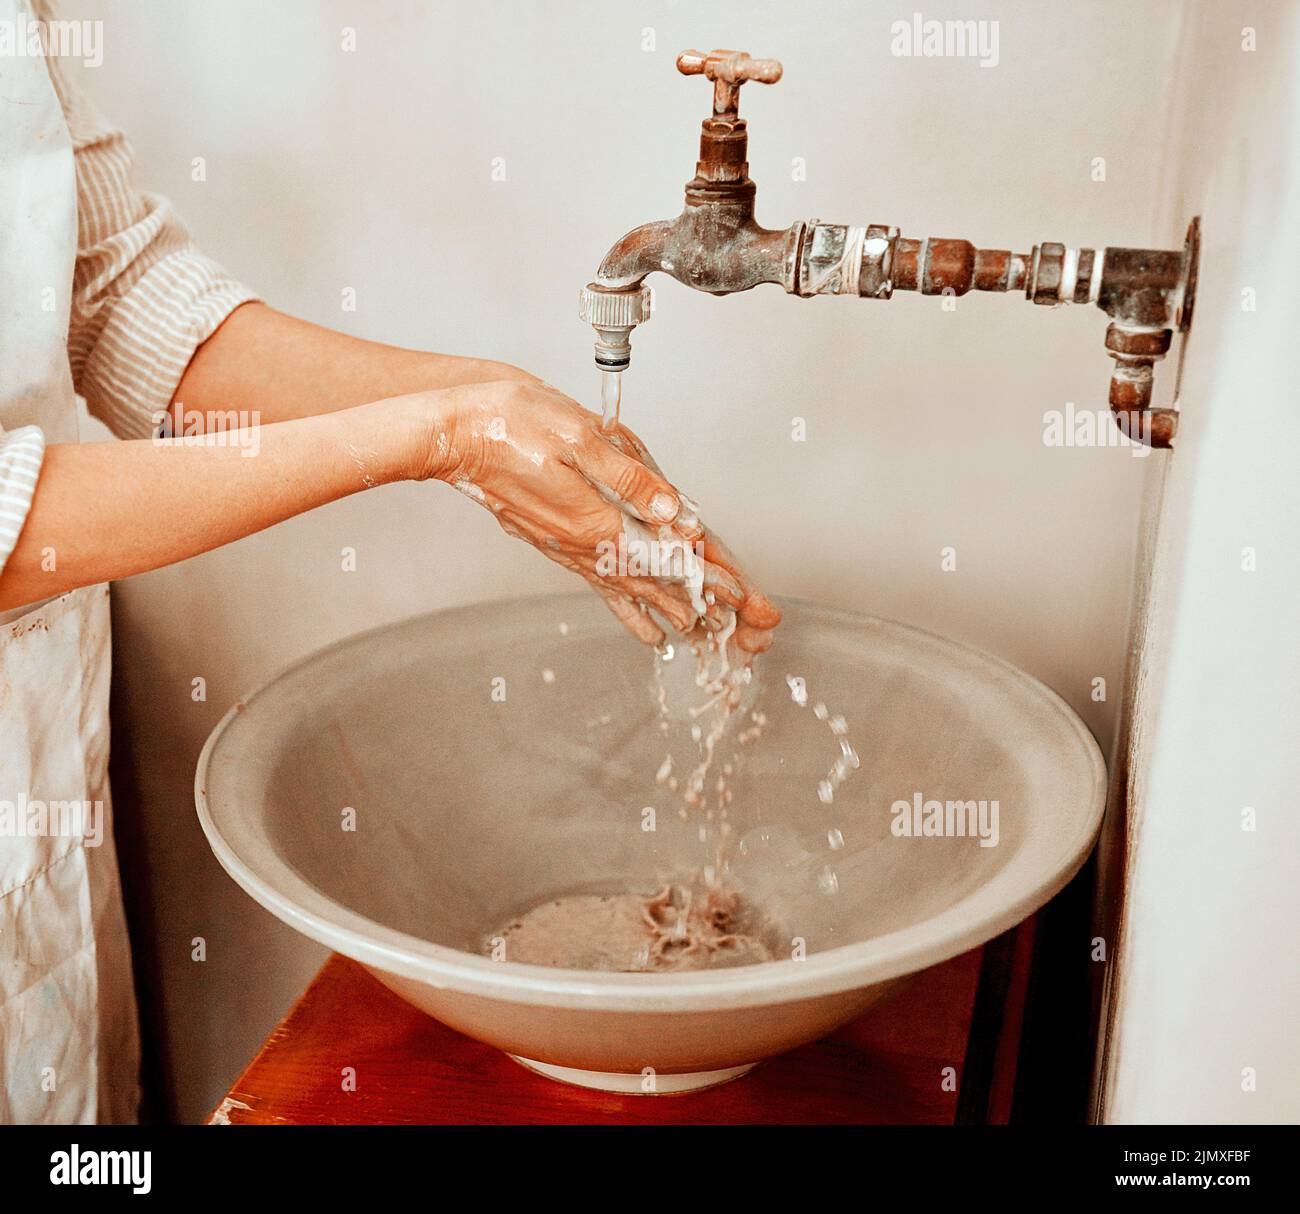 Sie können nicht Spaß haben, ohne schmutzig zu werden. Eine unkenntliche Frau, die ihre Hände wäscht. Stockfoto